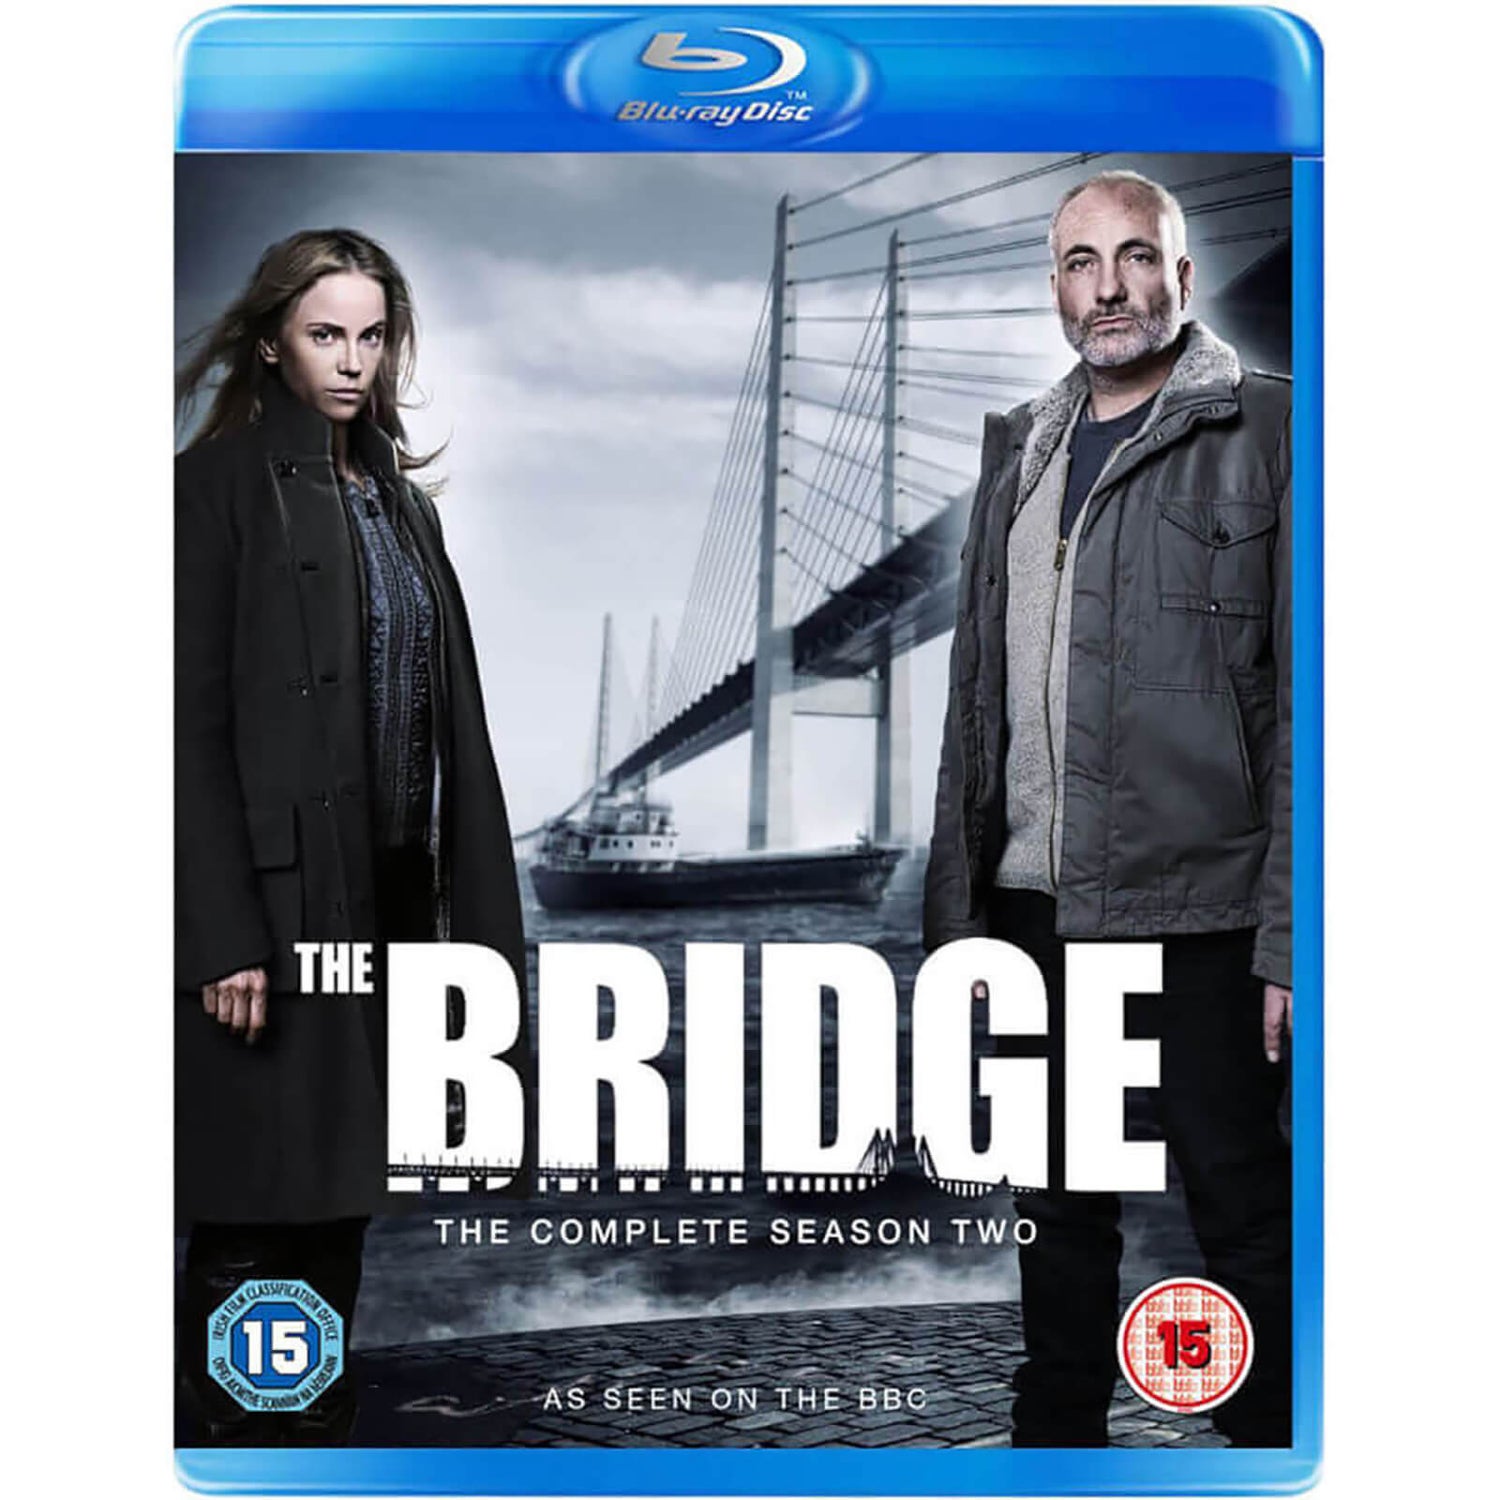 The Bridge Series 2 Blu-ray